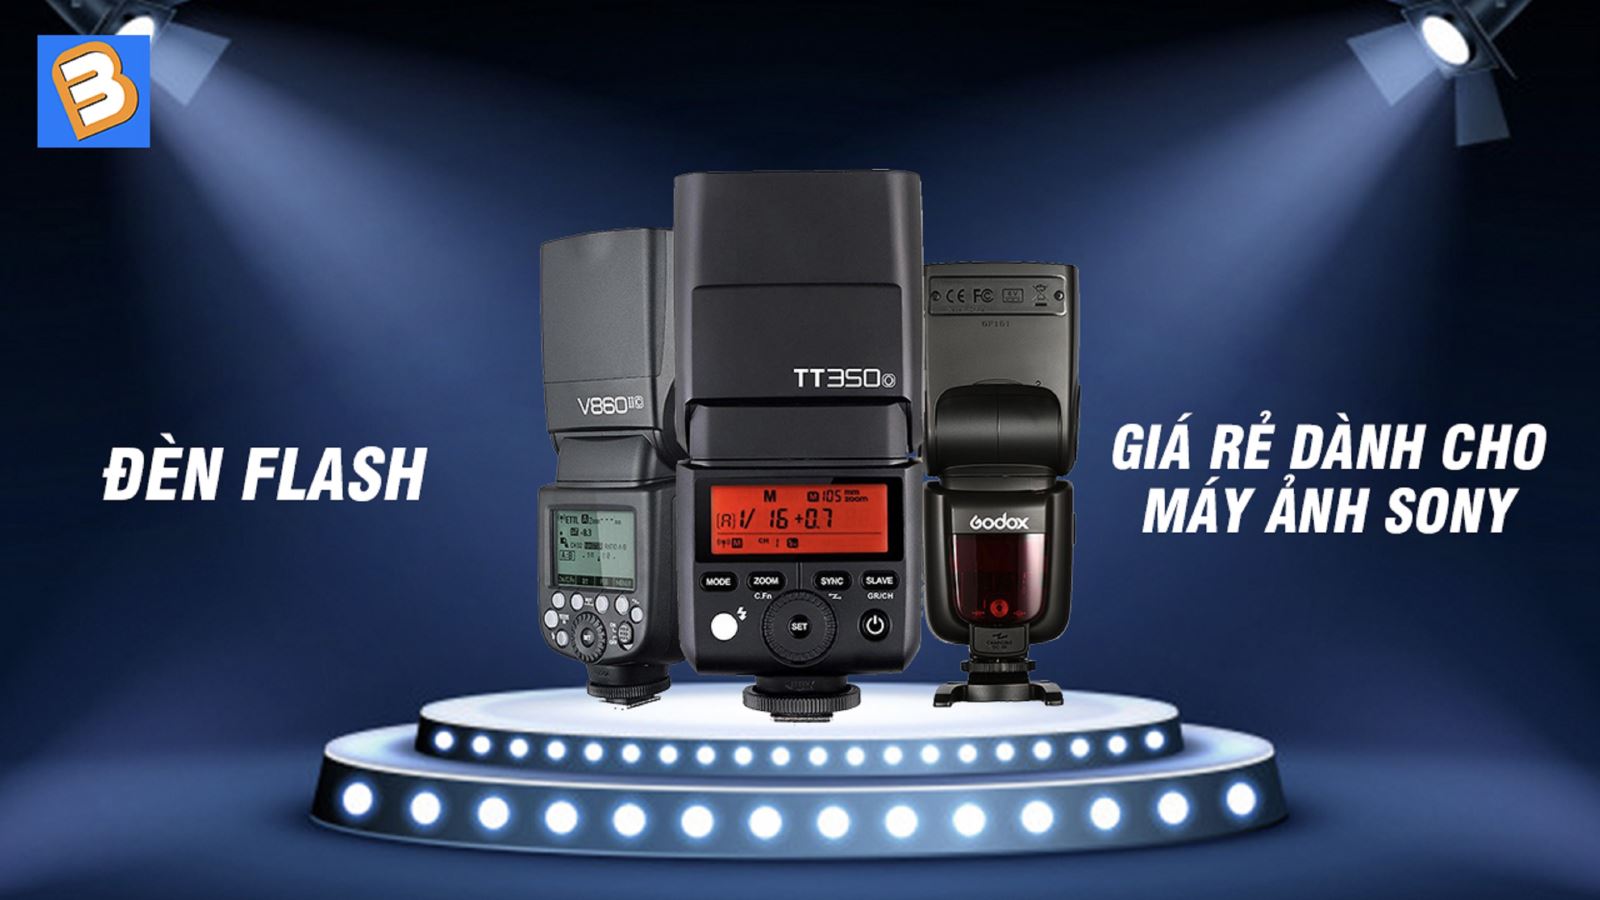 Đèn flash dành cho máy ảnh Sony giá rẻ, tốt nhất hiện nay